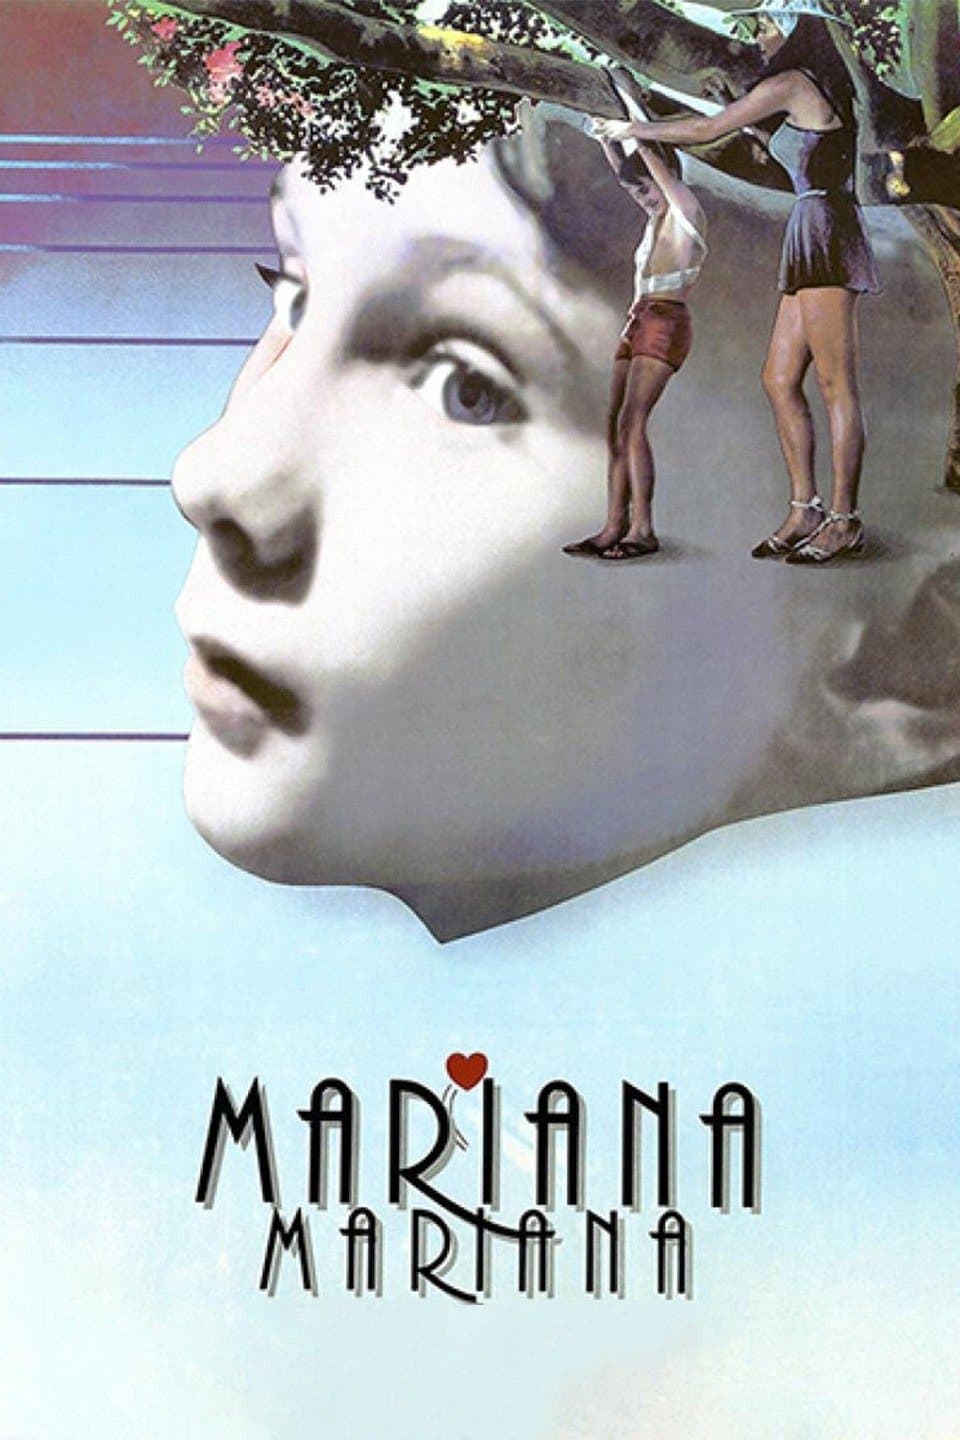 Mariana Mariana (1987)